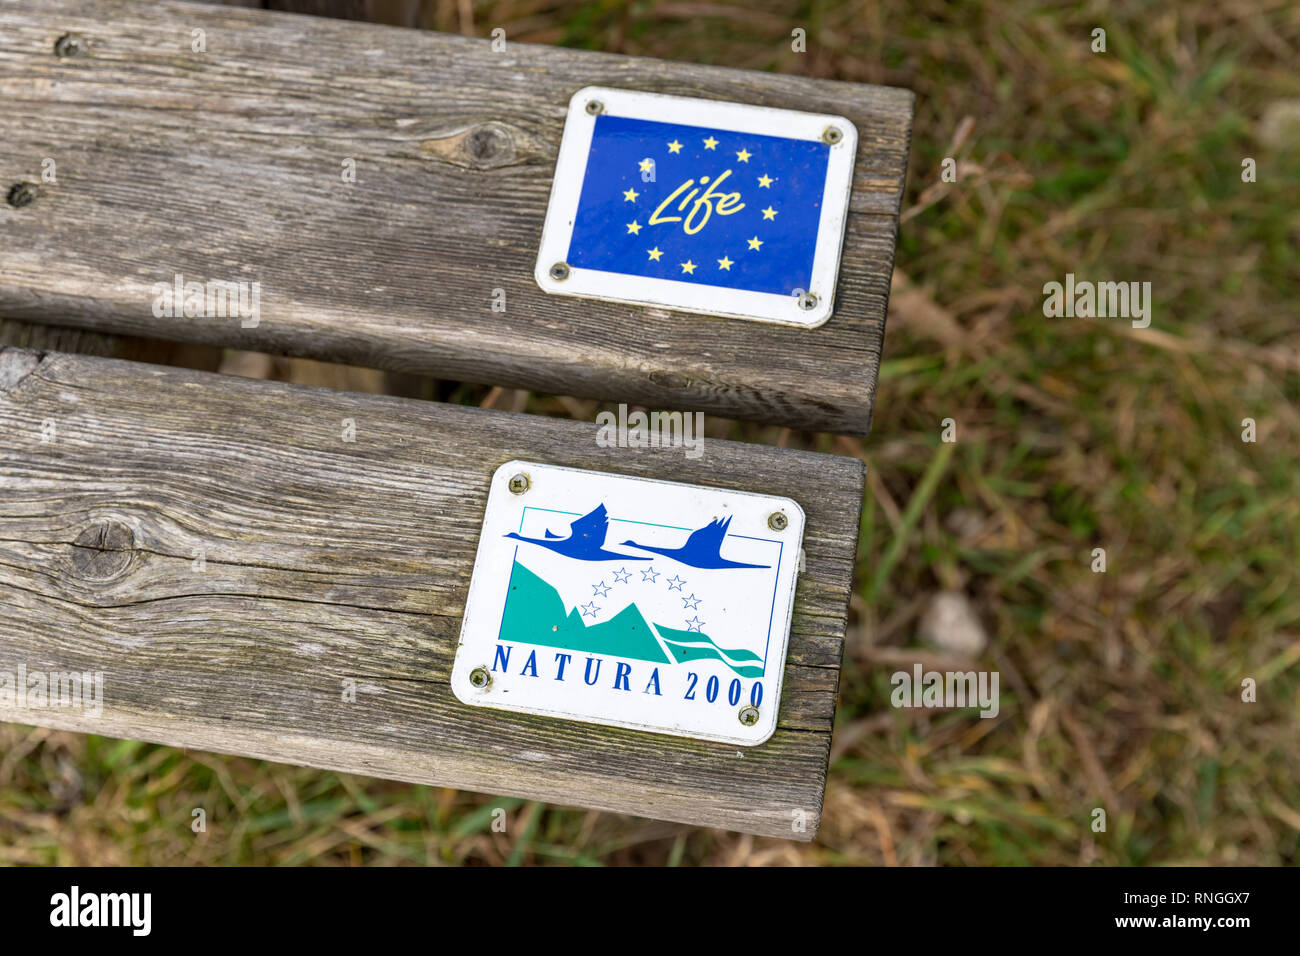 EU-LIFE-Programm und Natura 2000, Zeichen auf Brettern auf einer Holzbank, Stockfoto